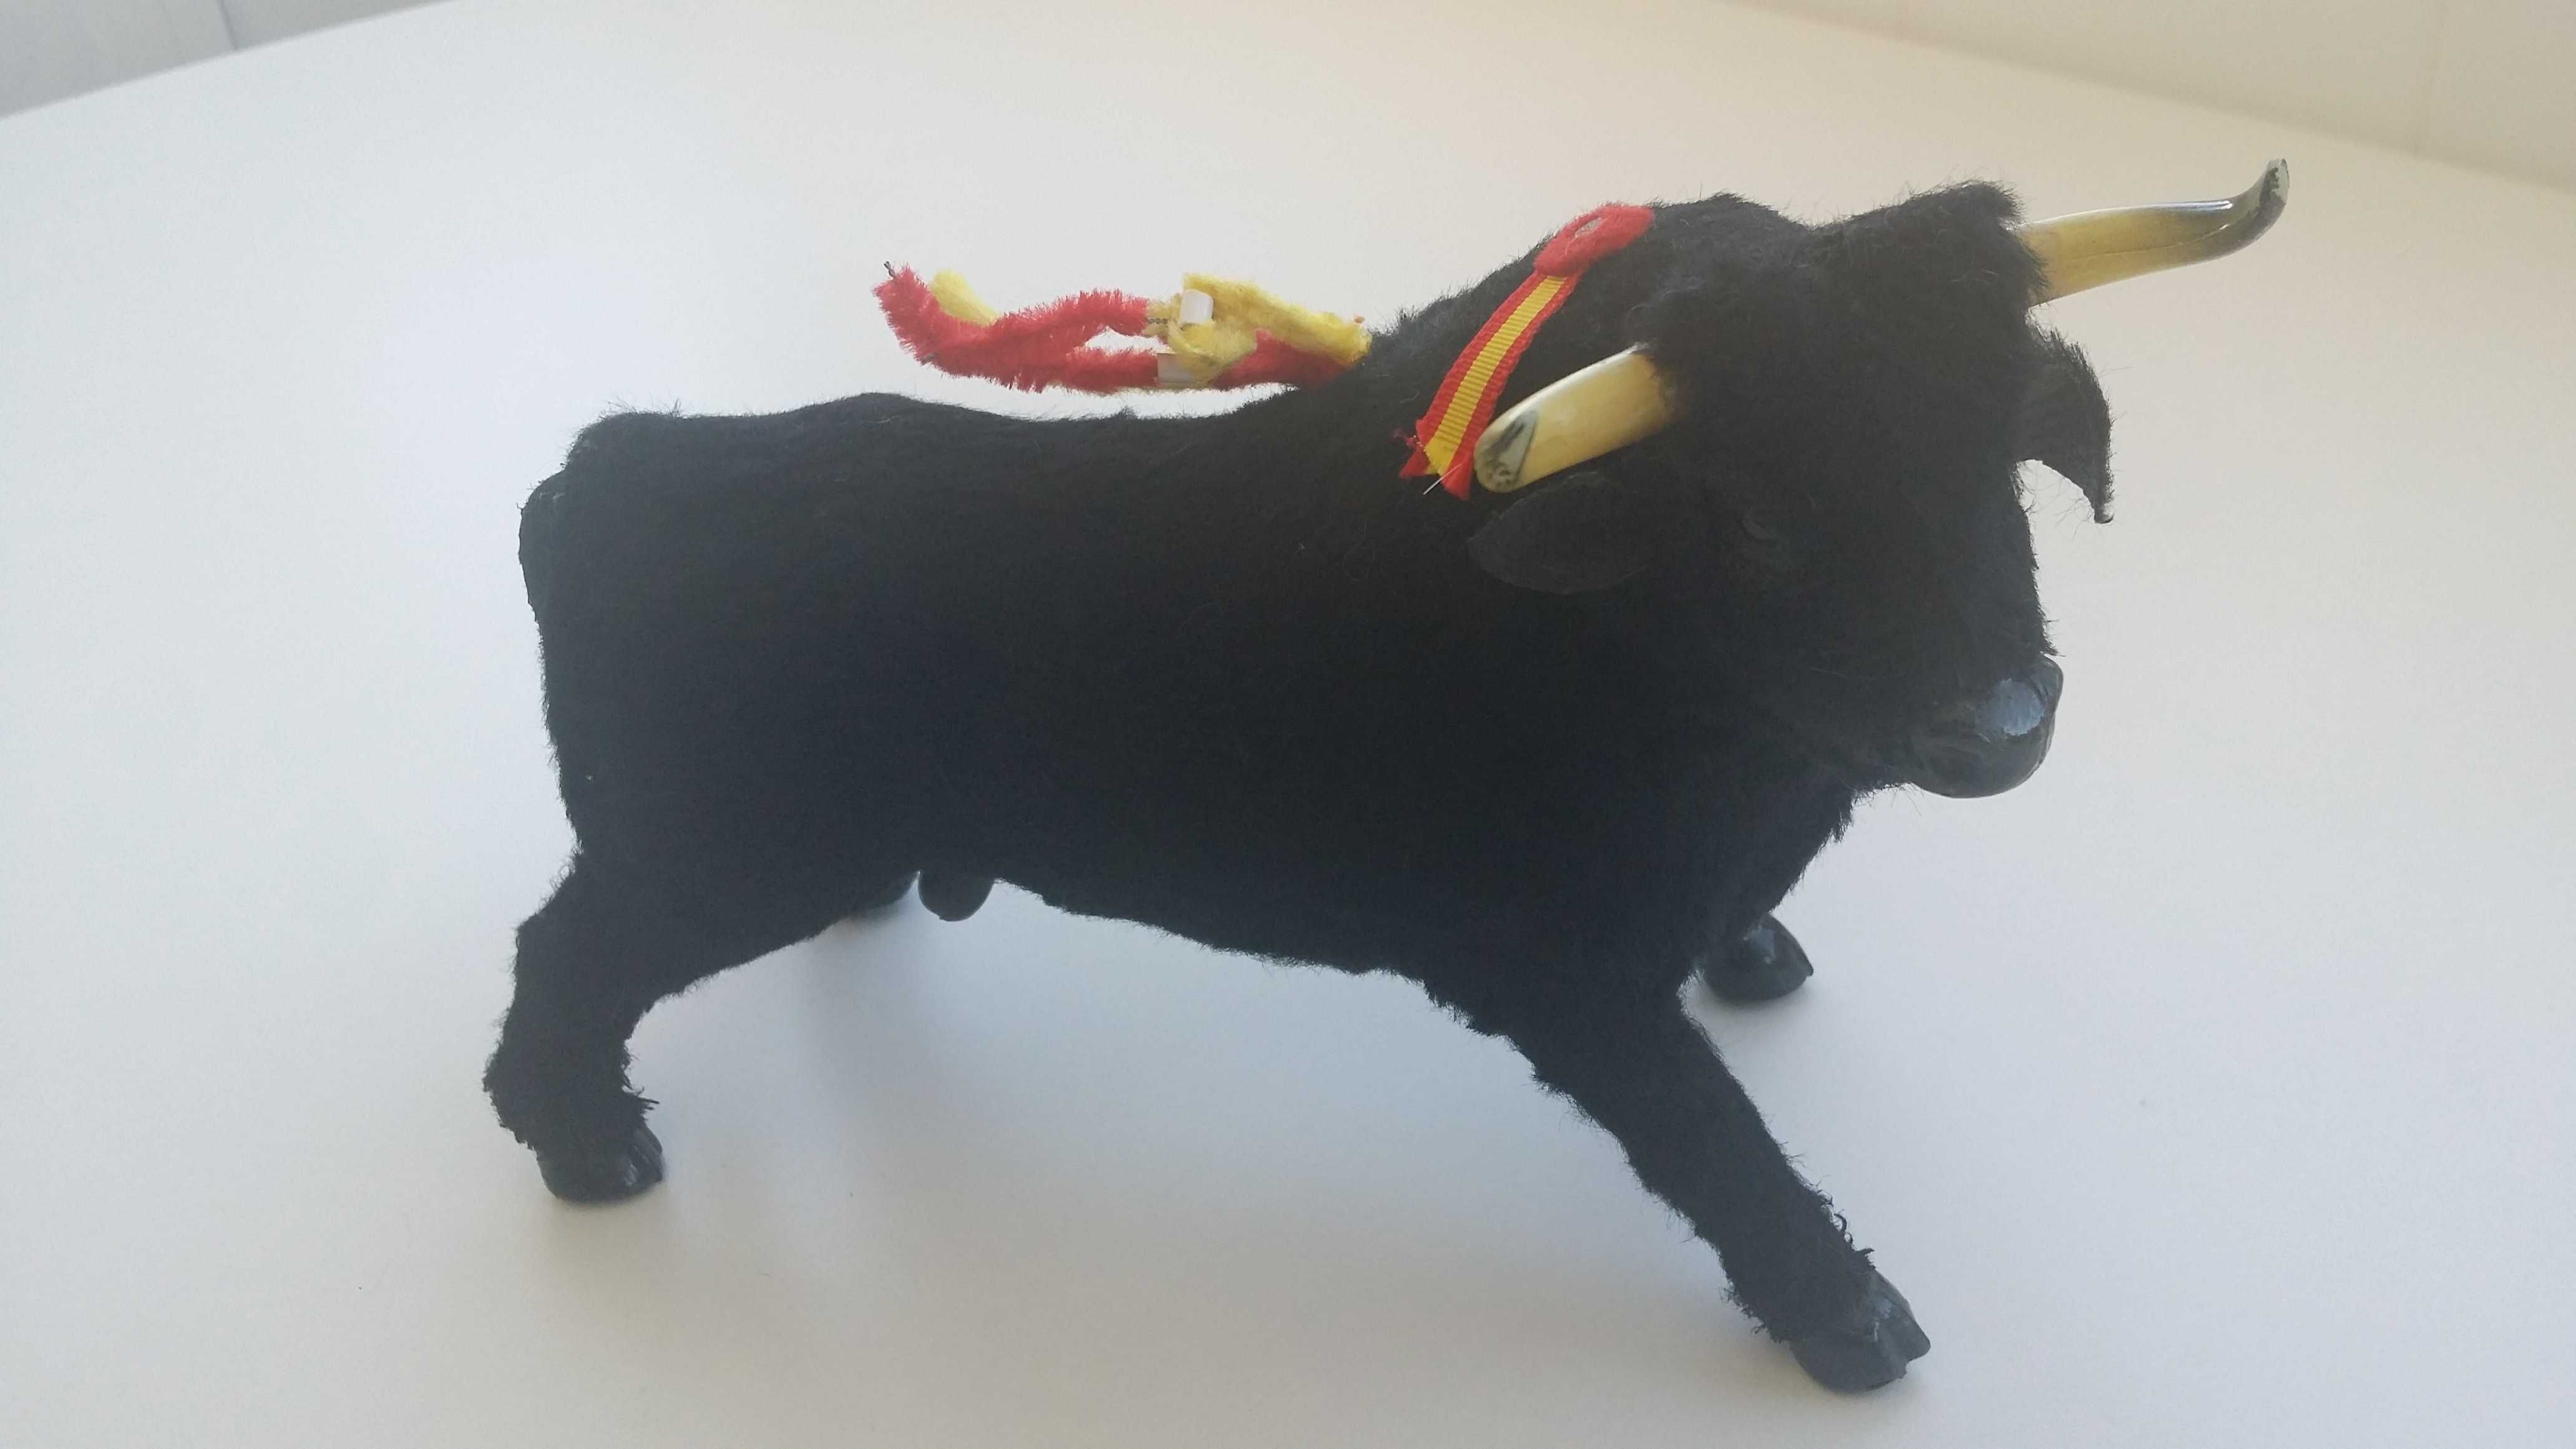 Coleccionismo decoração figura touro tourada Espanha Sevilha